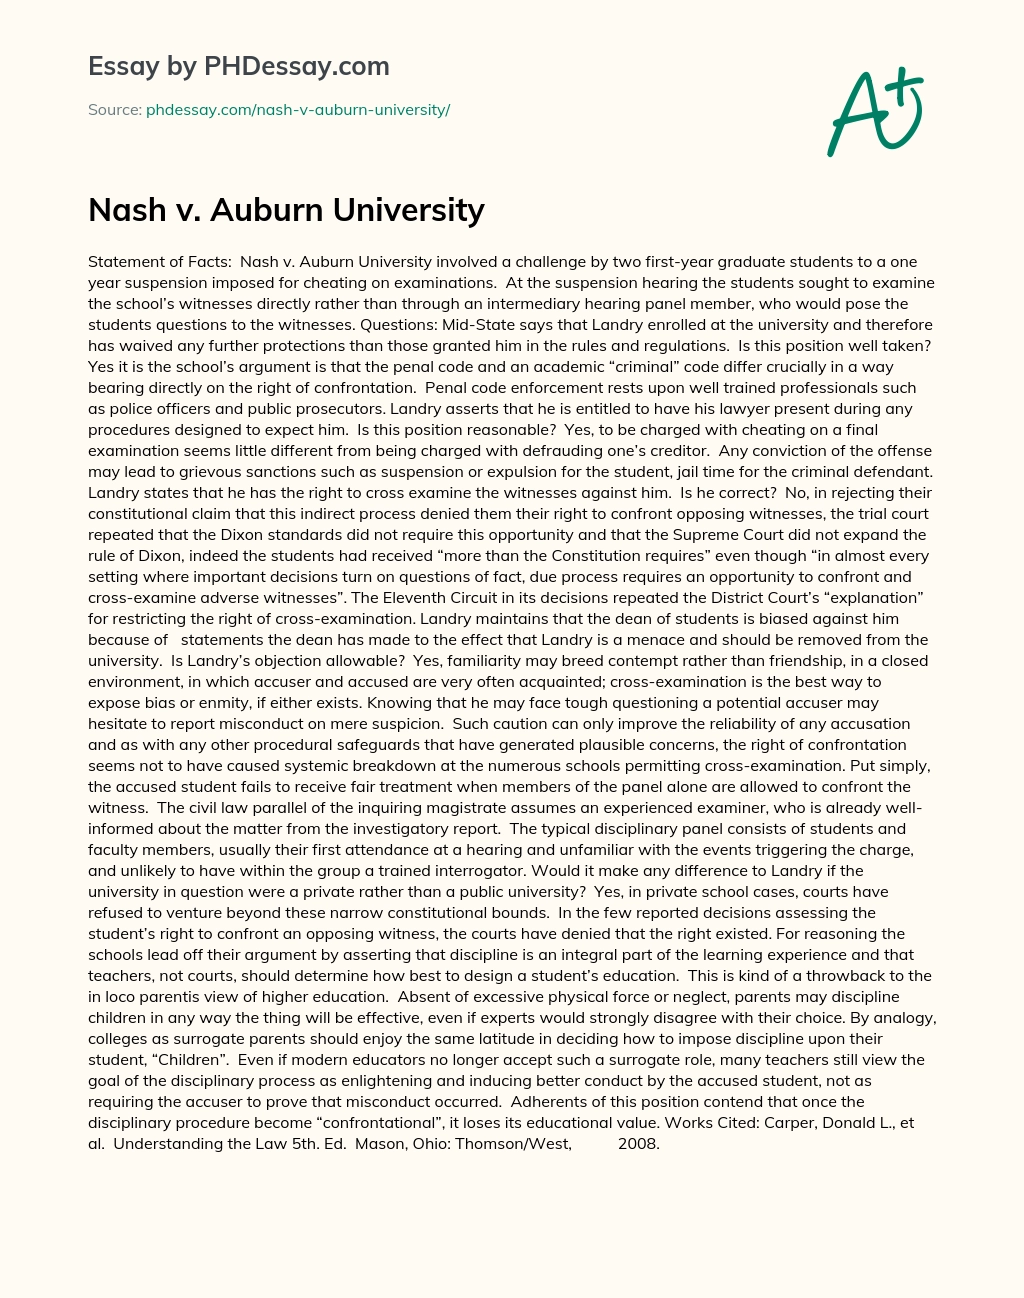 Nash v. Auburn University essay